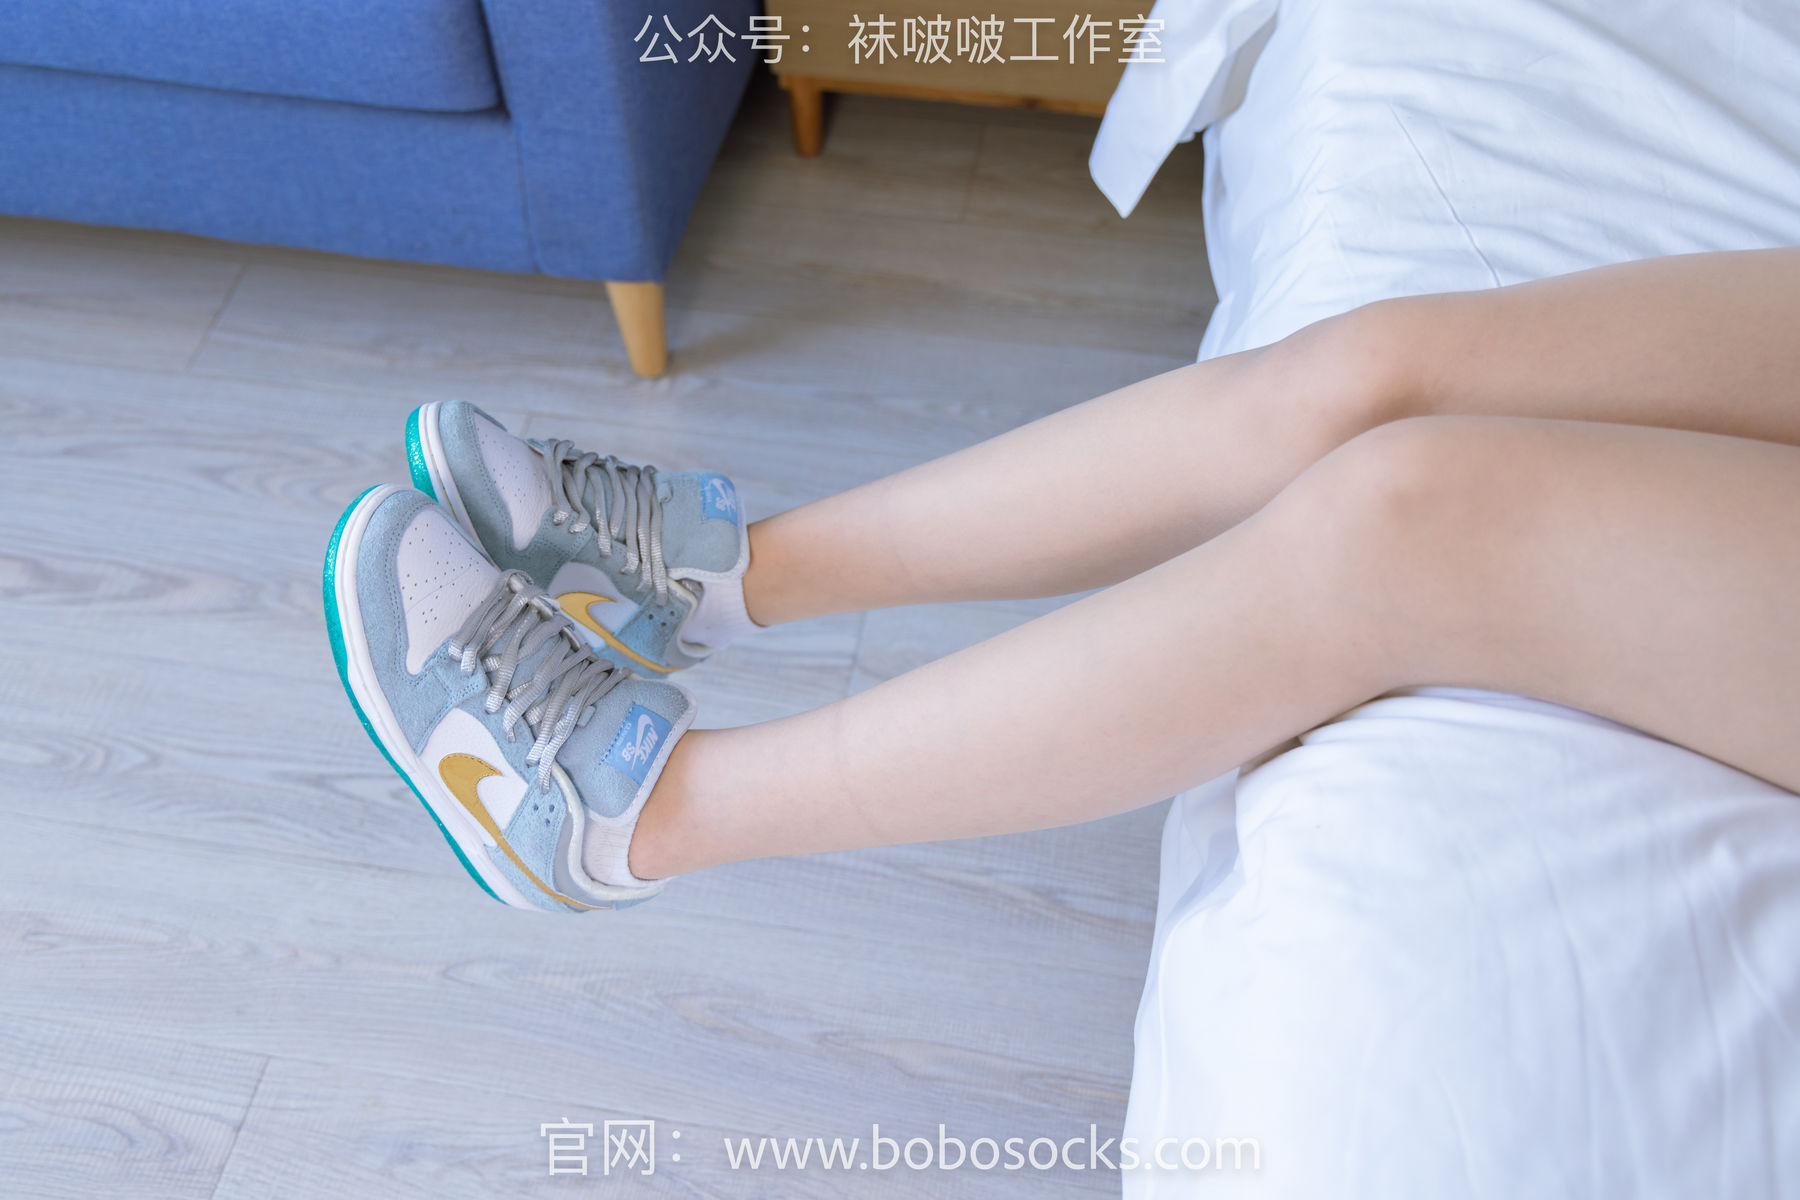 BoBoSocks袜啵啵 No.123 小甜豆-板鞋、白棉袜、肉丝/(140P)